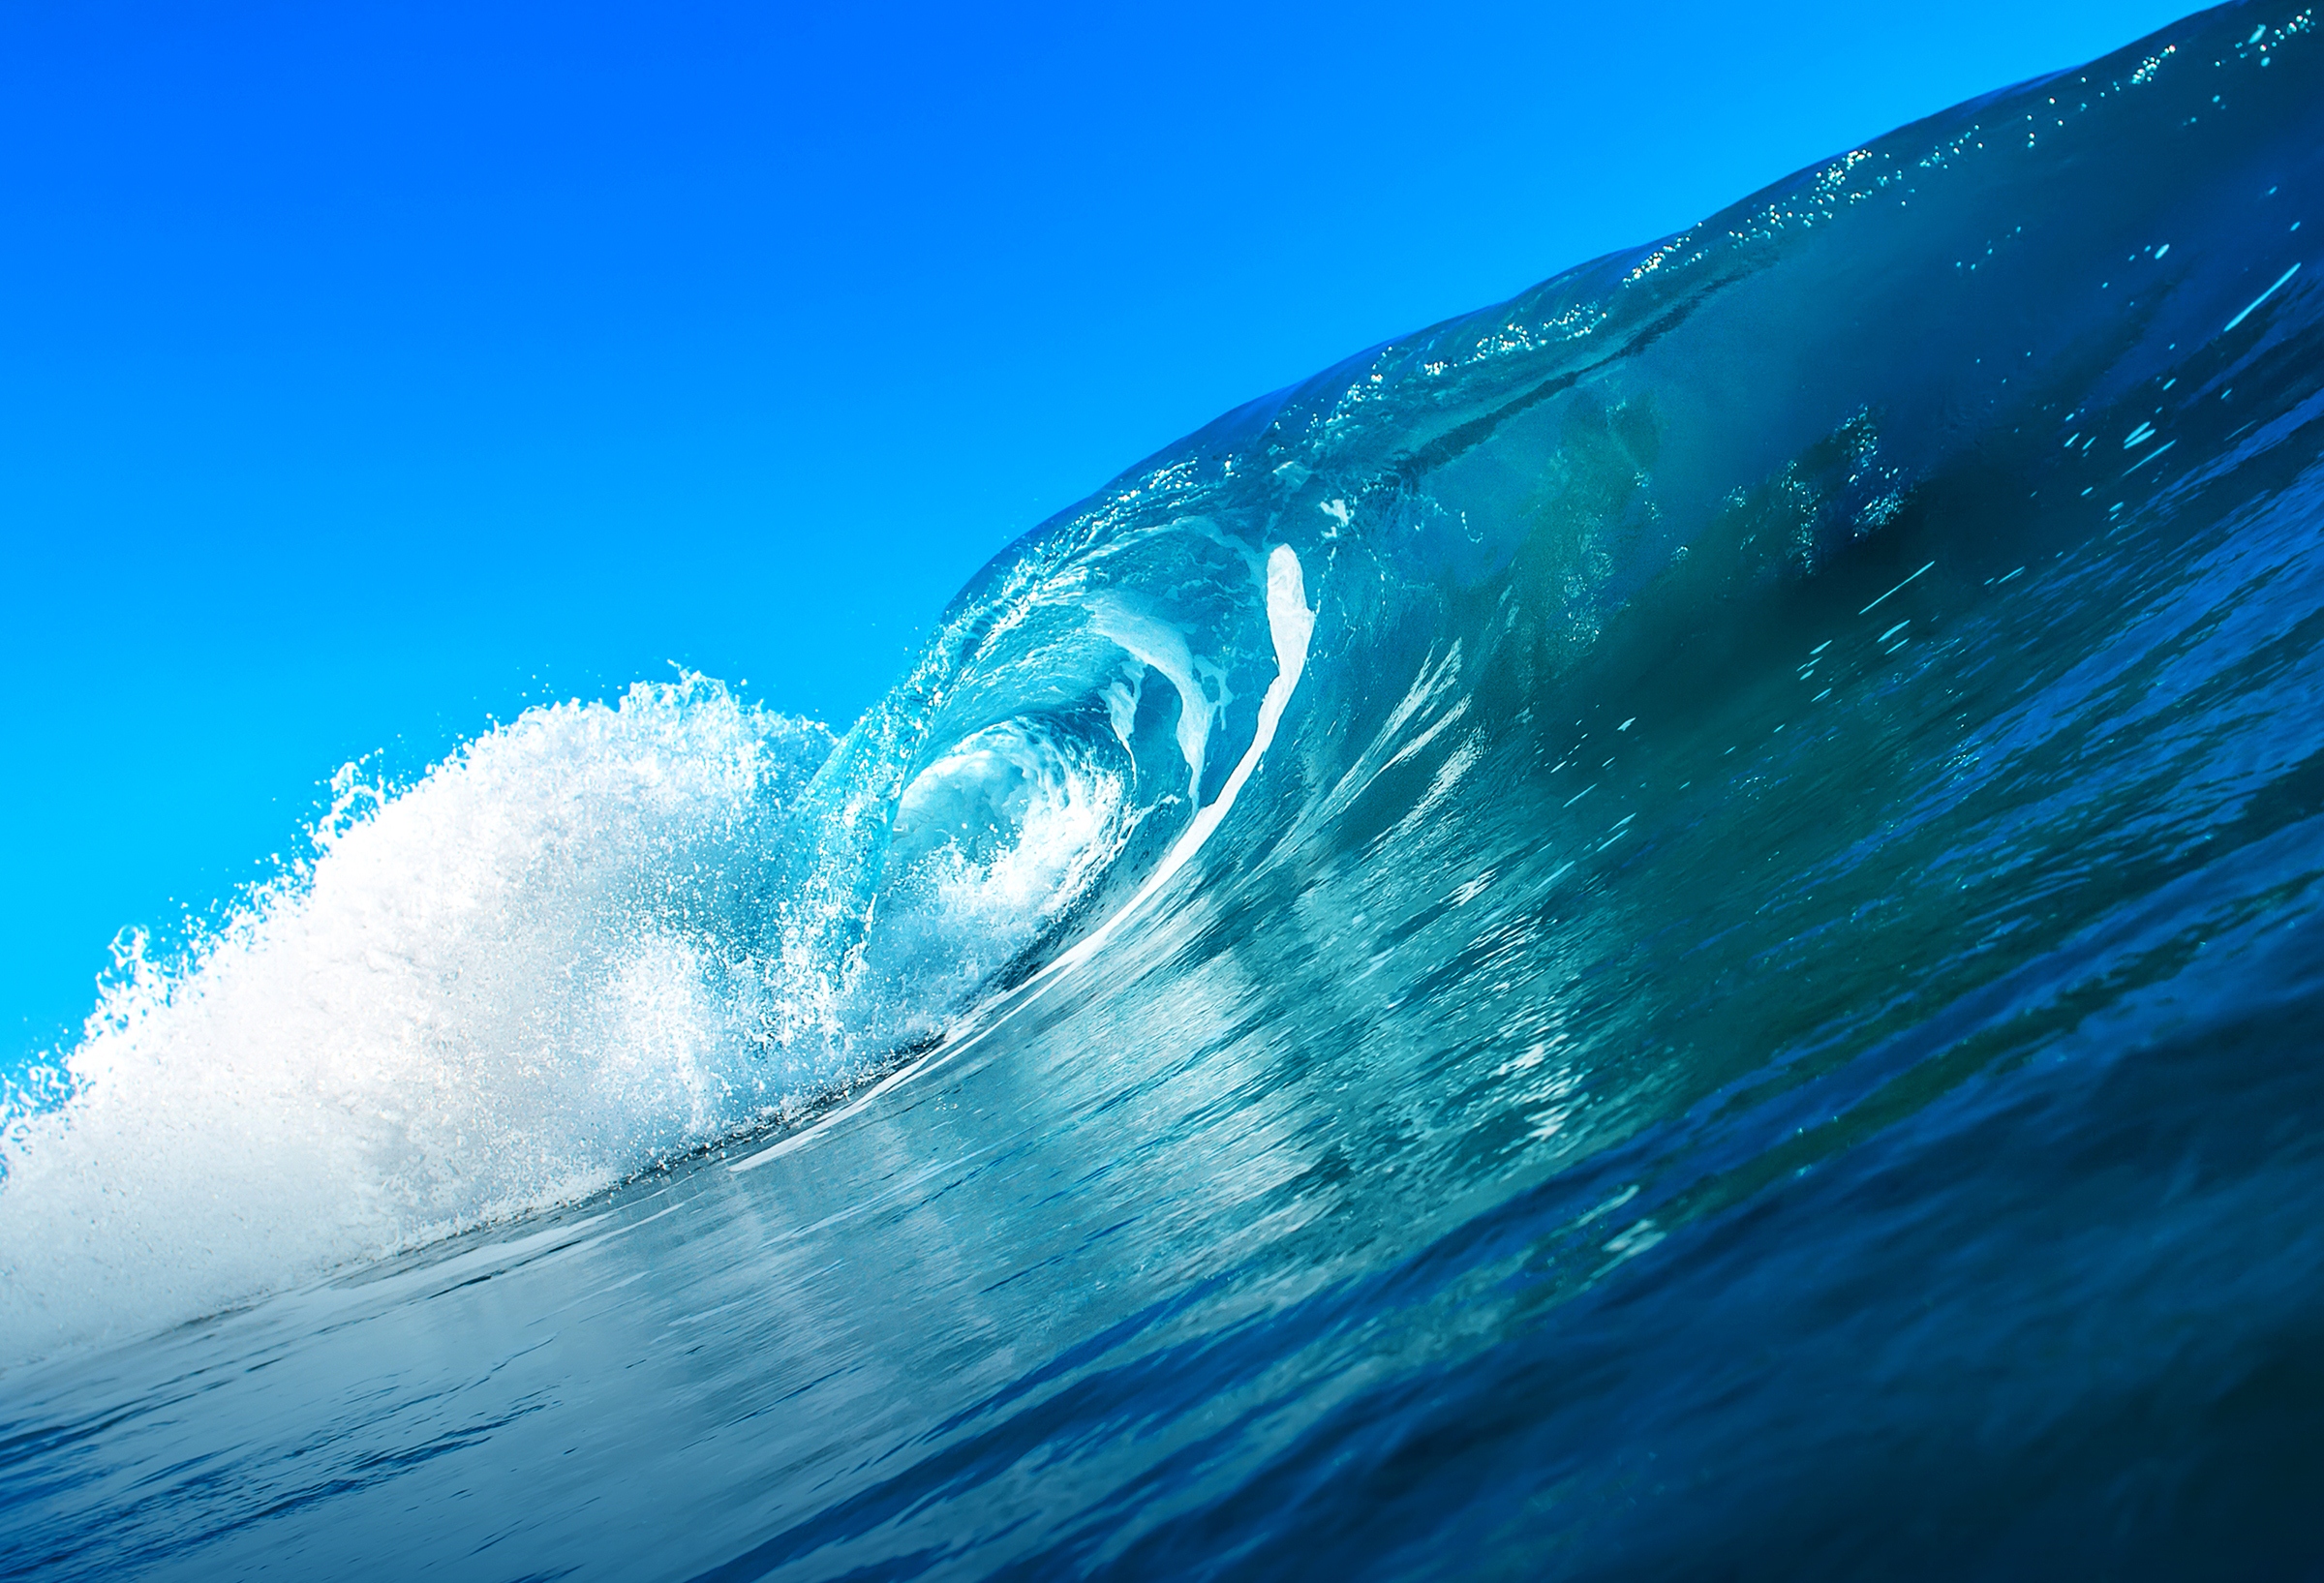 Обои на стол волна. Океан волны. Море вода. Волны на воде. Море, волны.